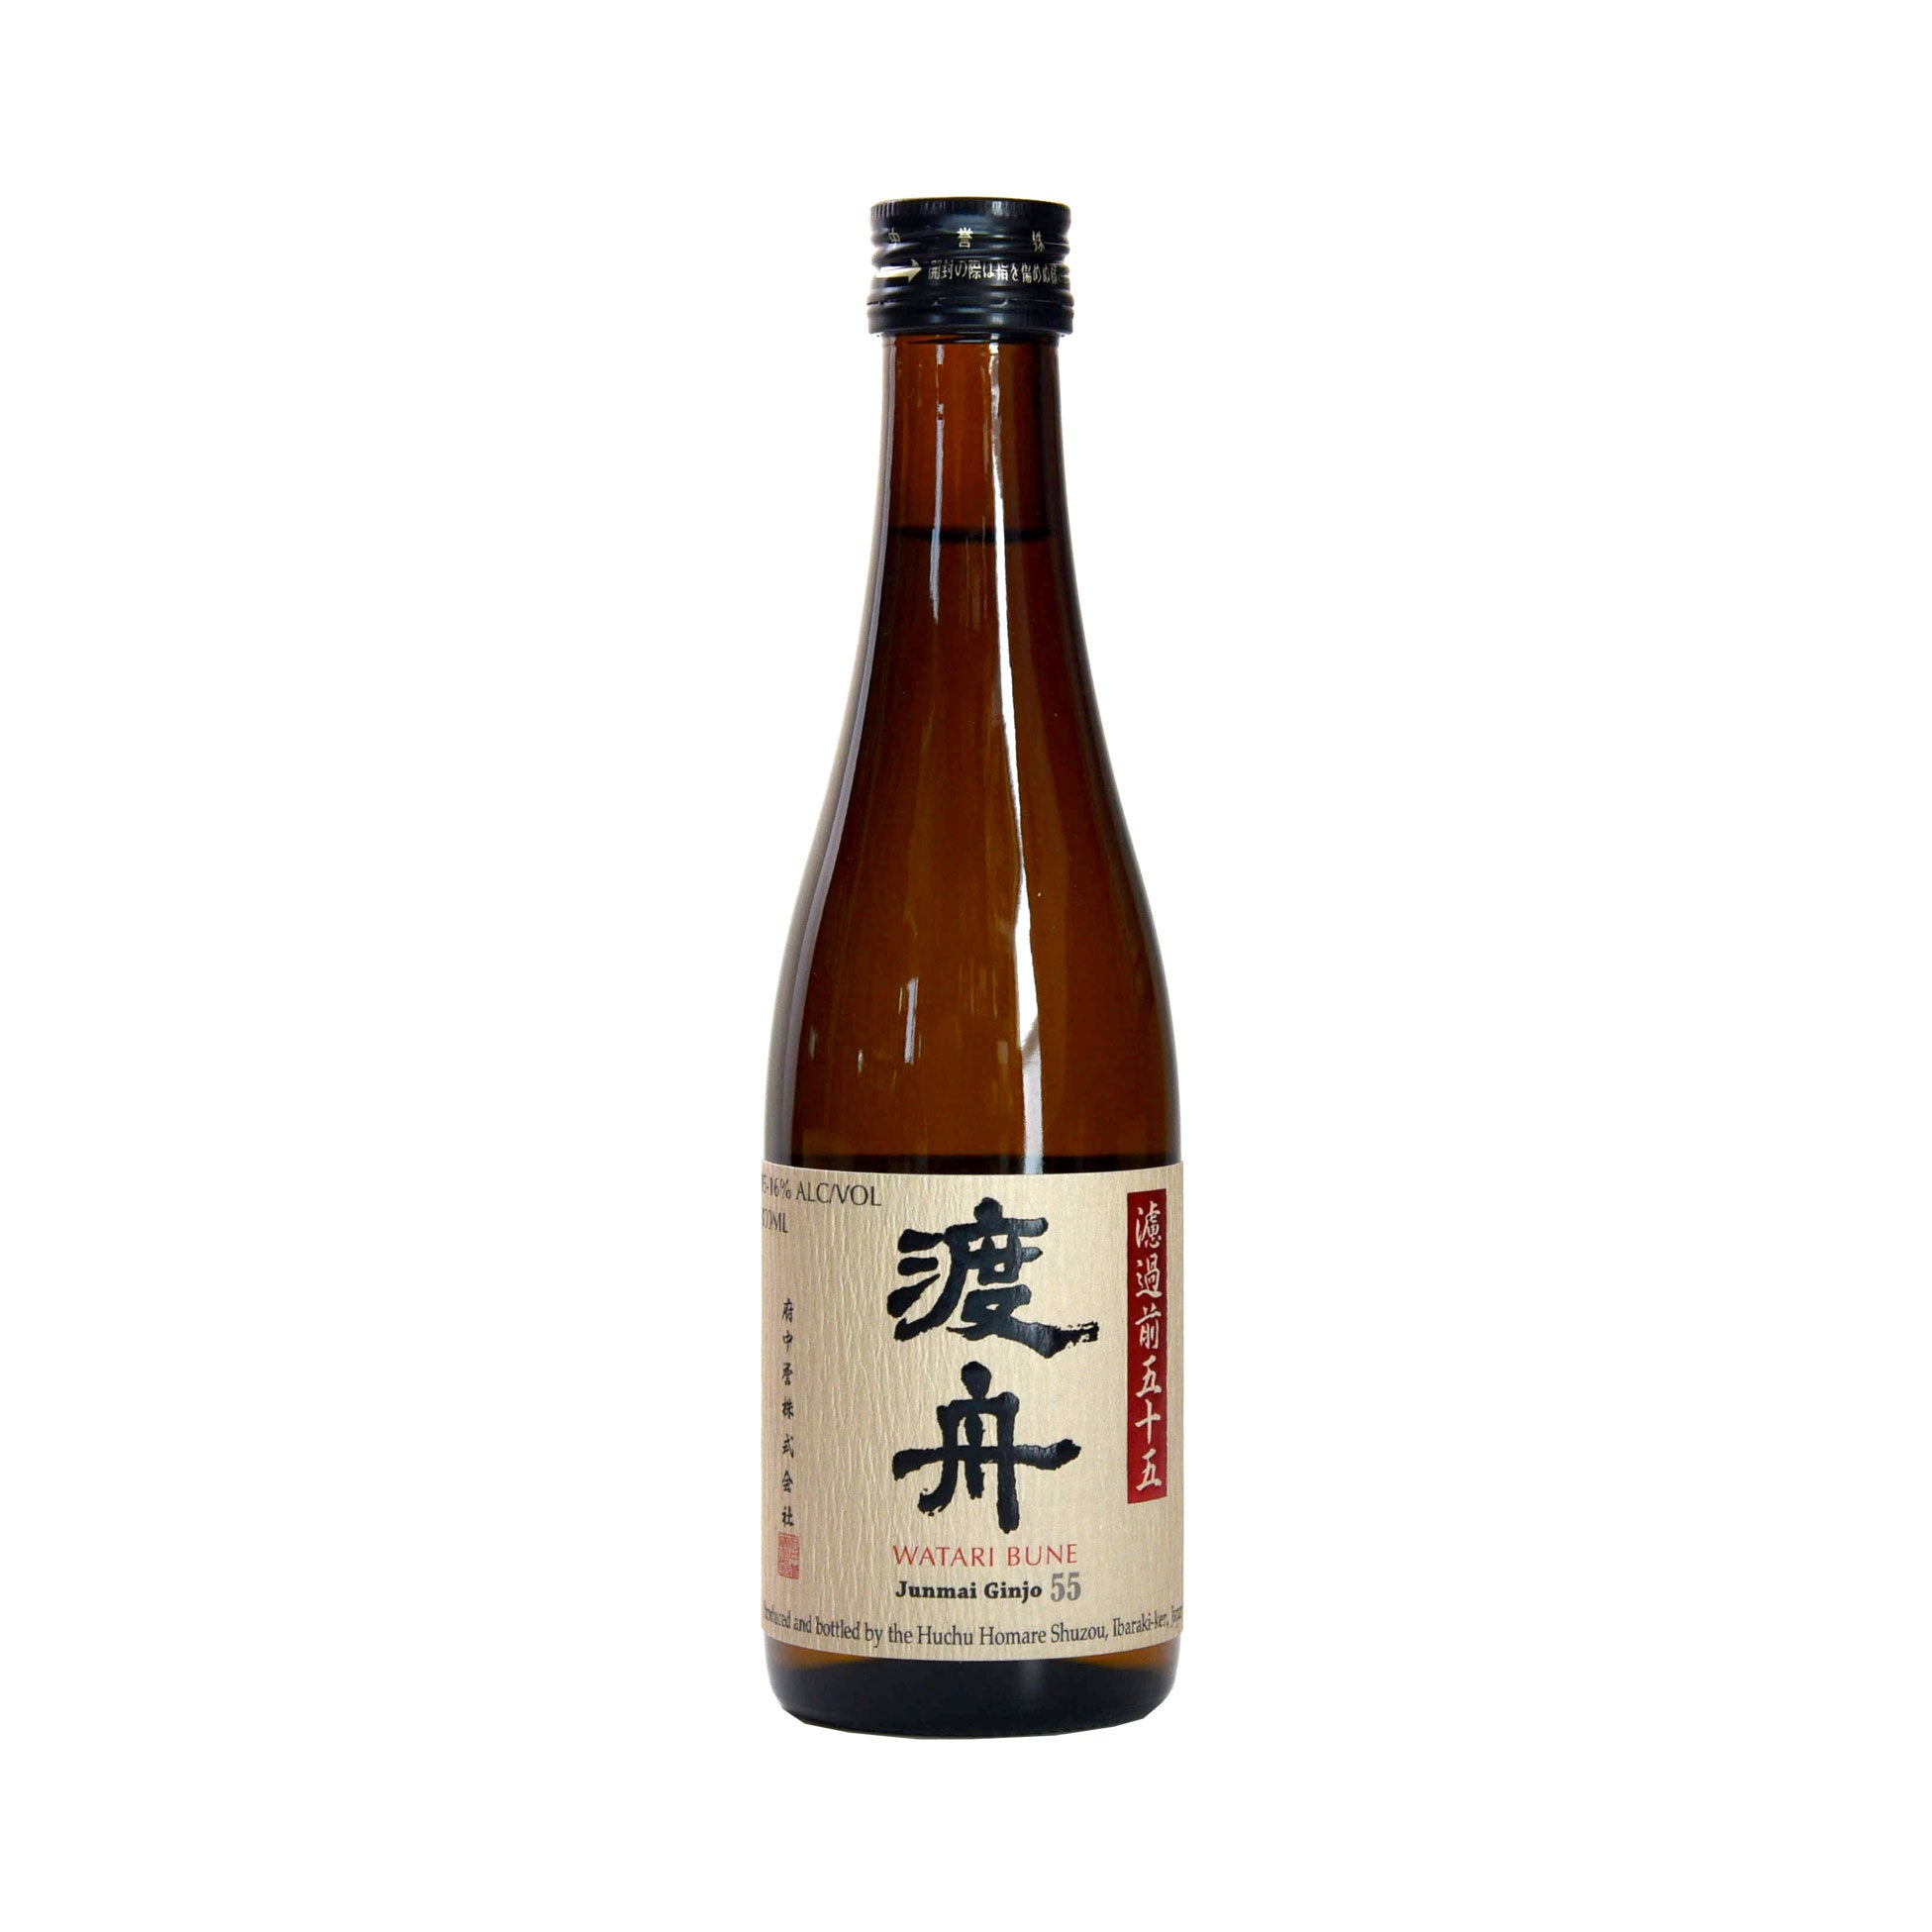 Watari Bune Junmai Ginjo 55 Sake (Two Pack BTL 10 oz)